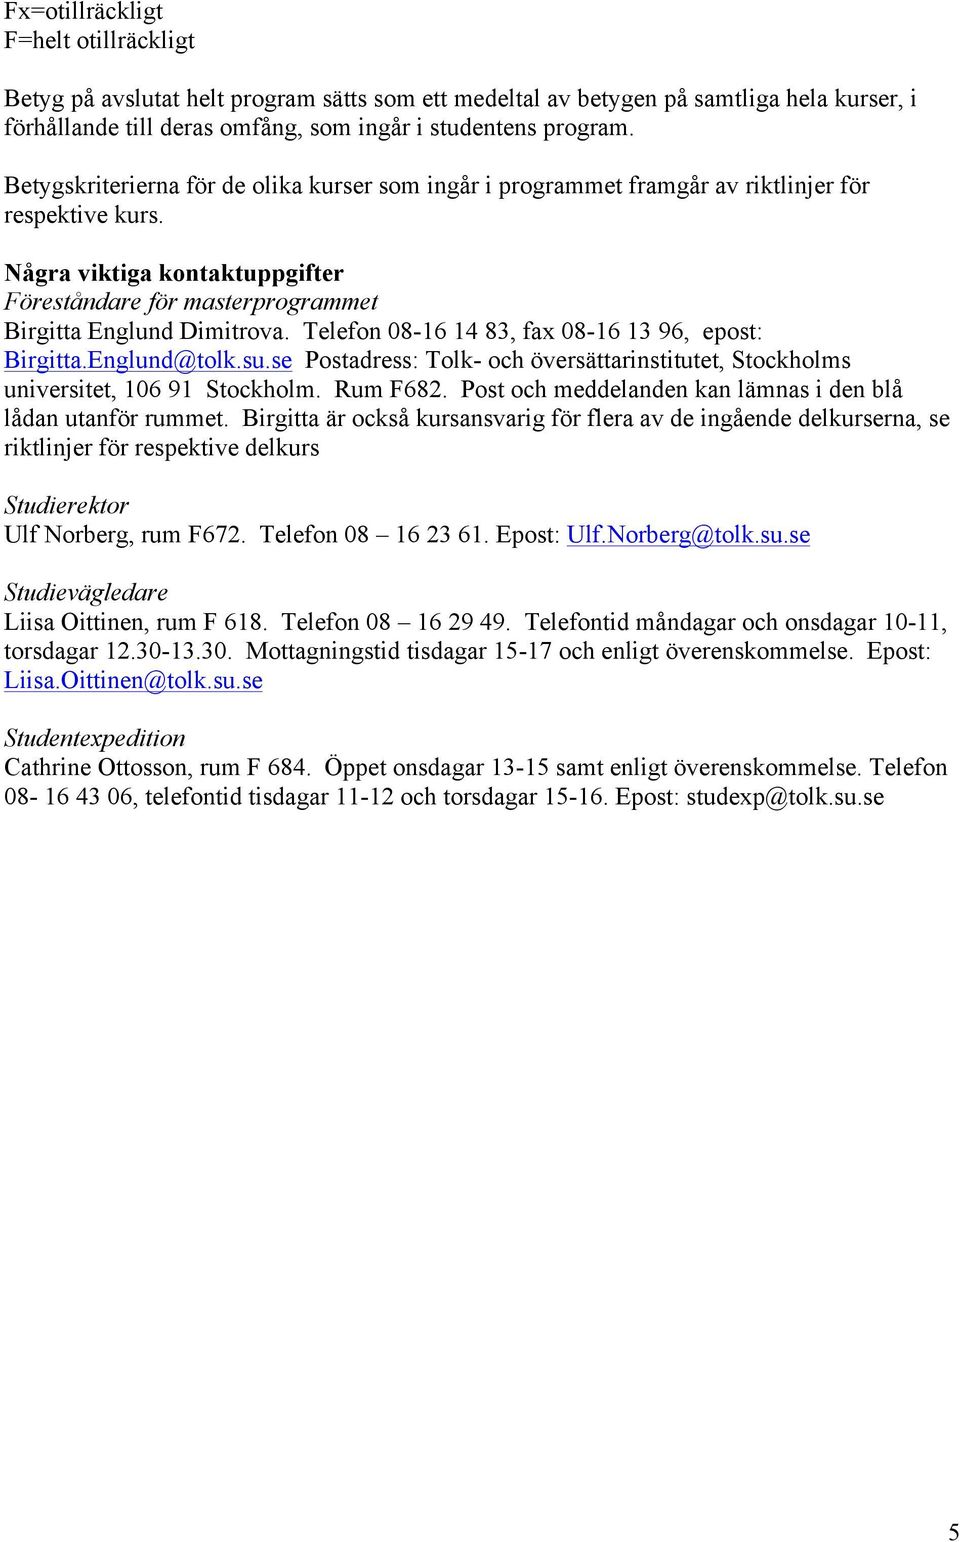 Telefon 08-16 14 83, fax 08-16 13 96, epost: Birgitta.Englund@tolk.su.se Postadress: Tolk- och översättarinstitutet, Stockholms universitet, 106 91 Stockholm. Rum F682.